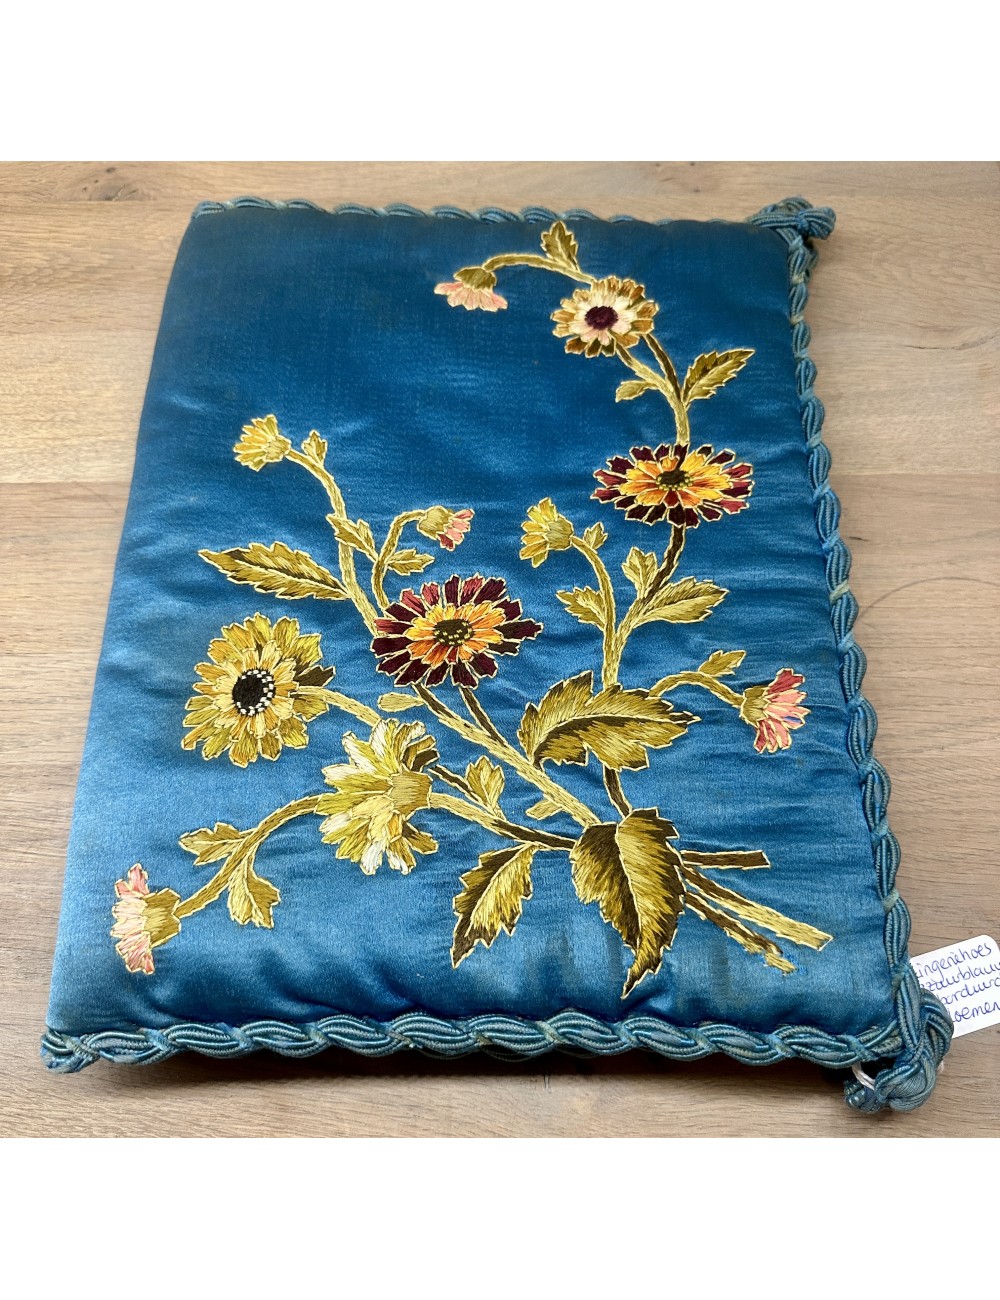 Lingeriehoes / Zakdoekenhoes - diep azuurblauwe zijde met geborduurde bloemen